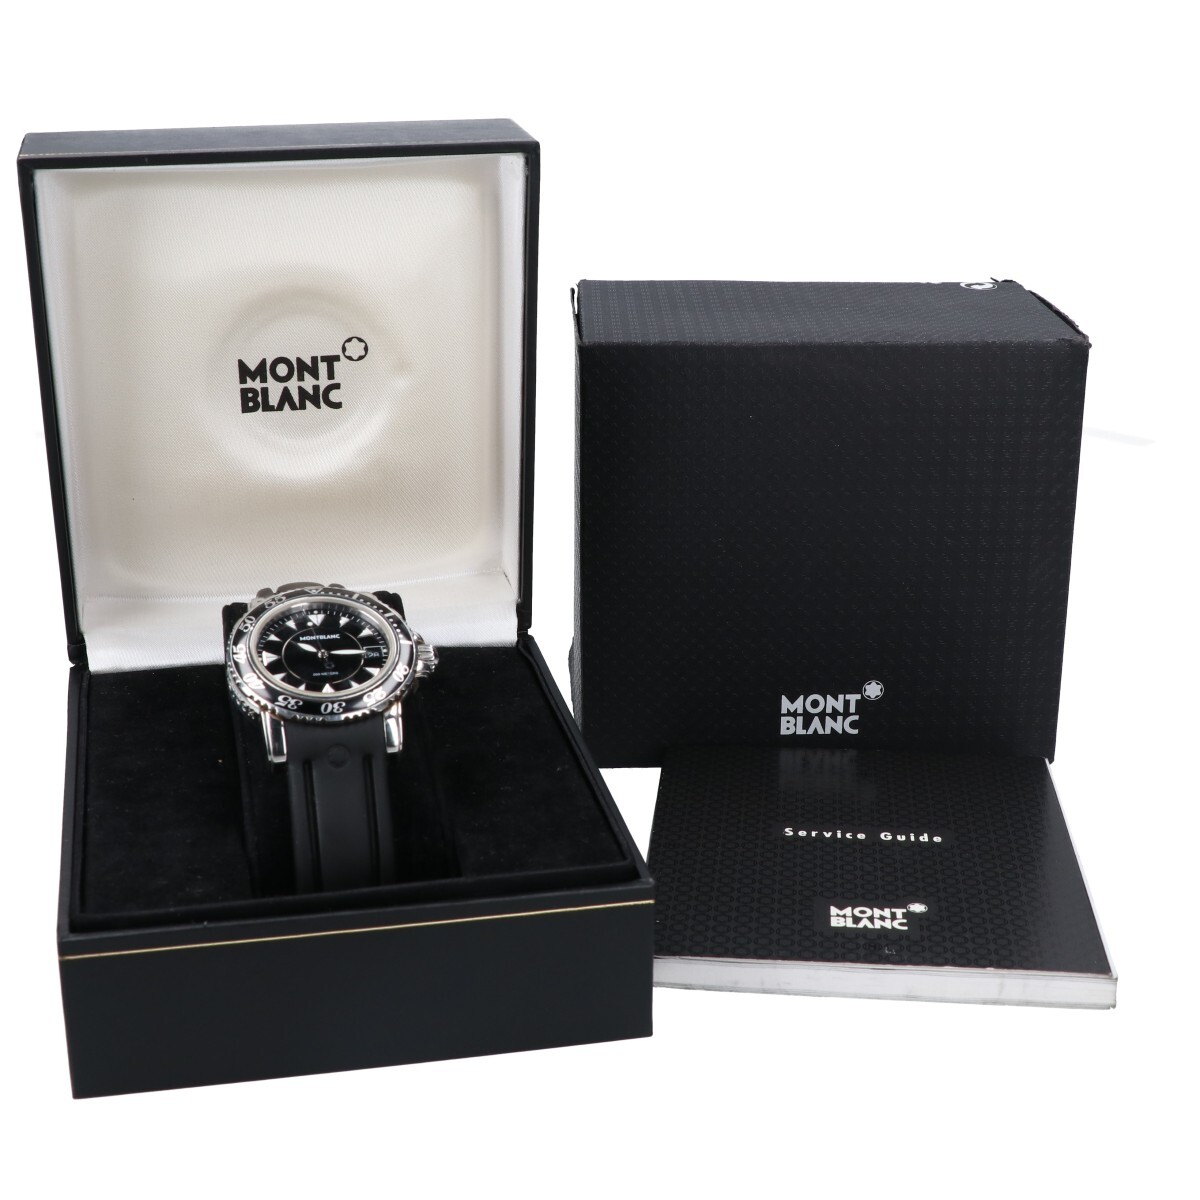 MONTBLANC Montblanc 3278 MEISTERSTUCK my? Star shute.k Date 7037 quartz rubber belt wristwatch silver / black 